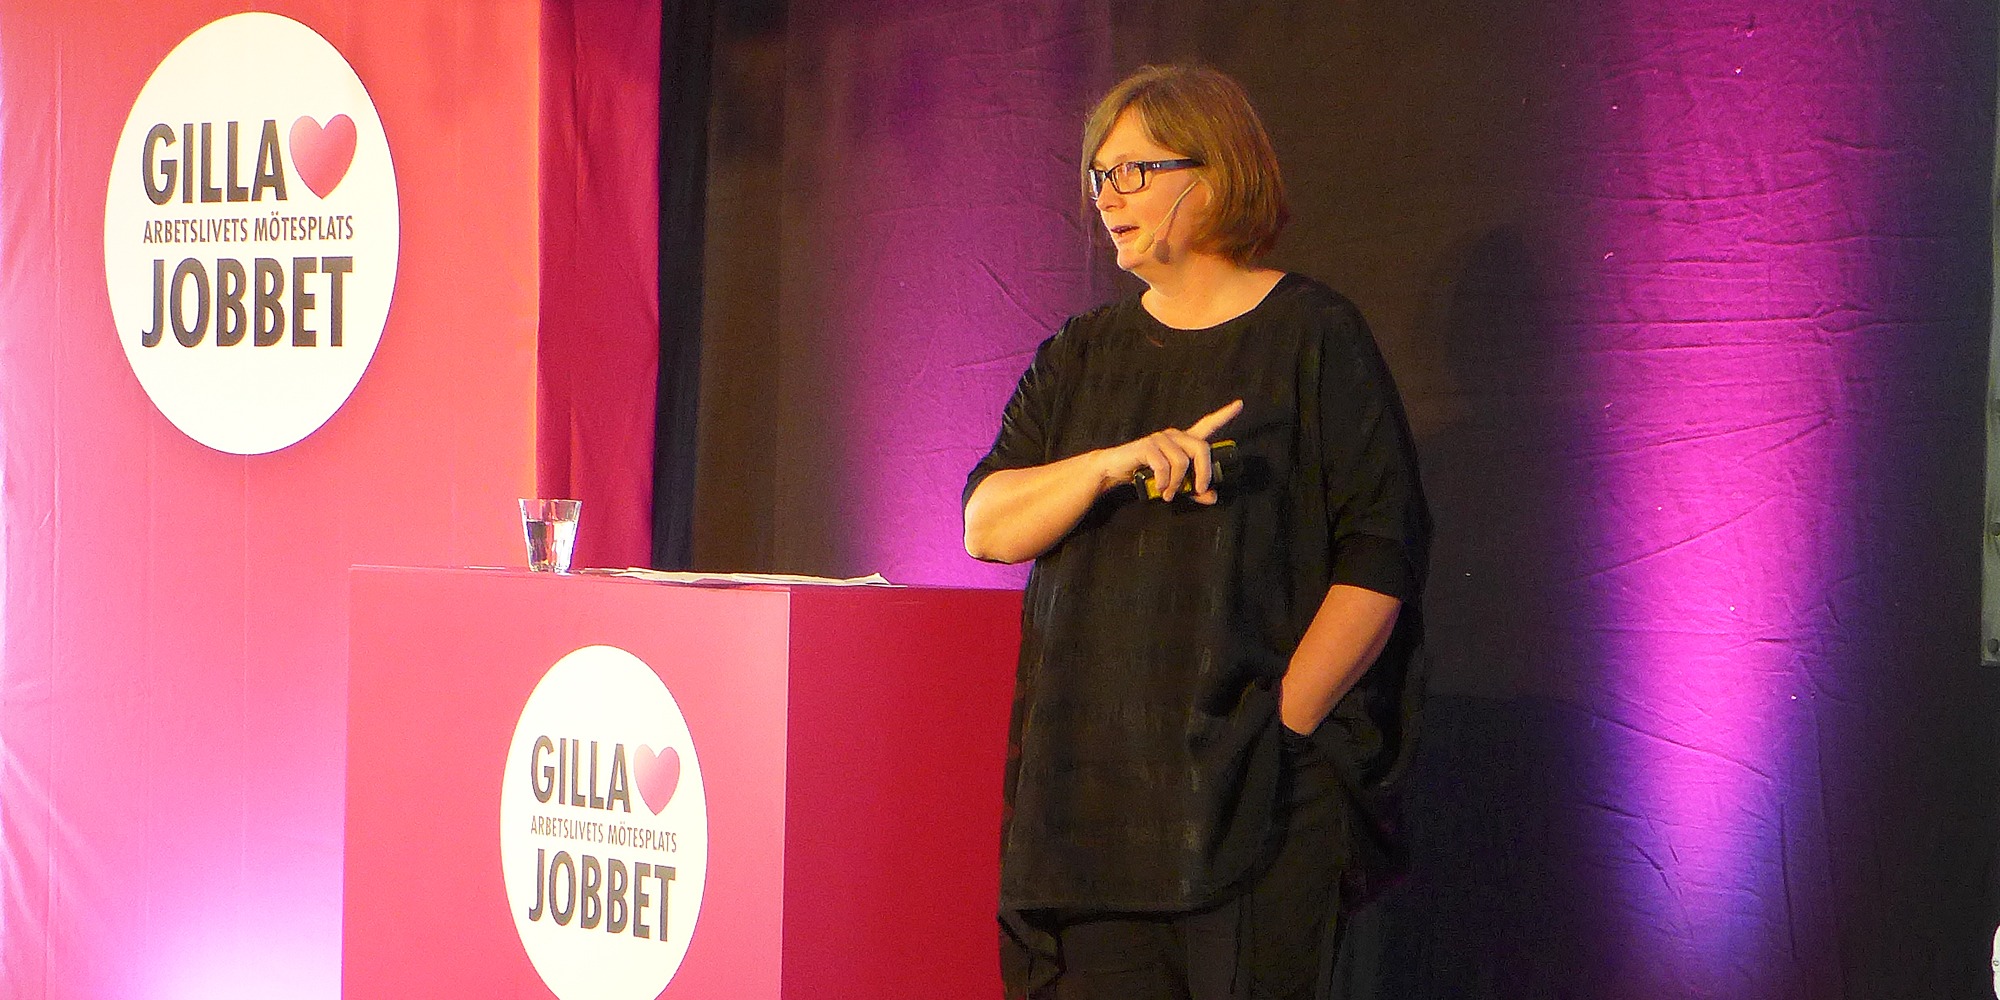 Lisbeth Rydén håller föredrag på Gilla jobbet. svart klänning, lila bakgrund.